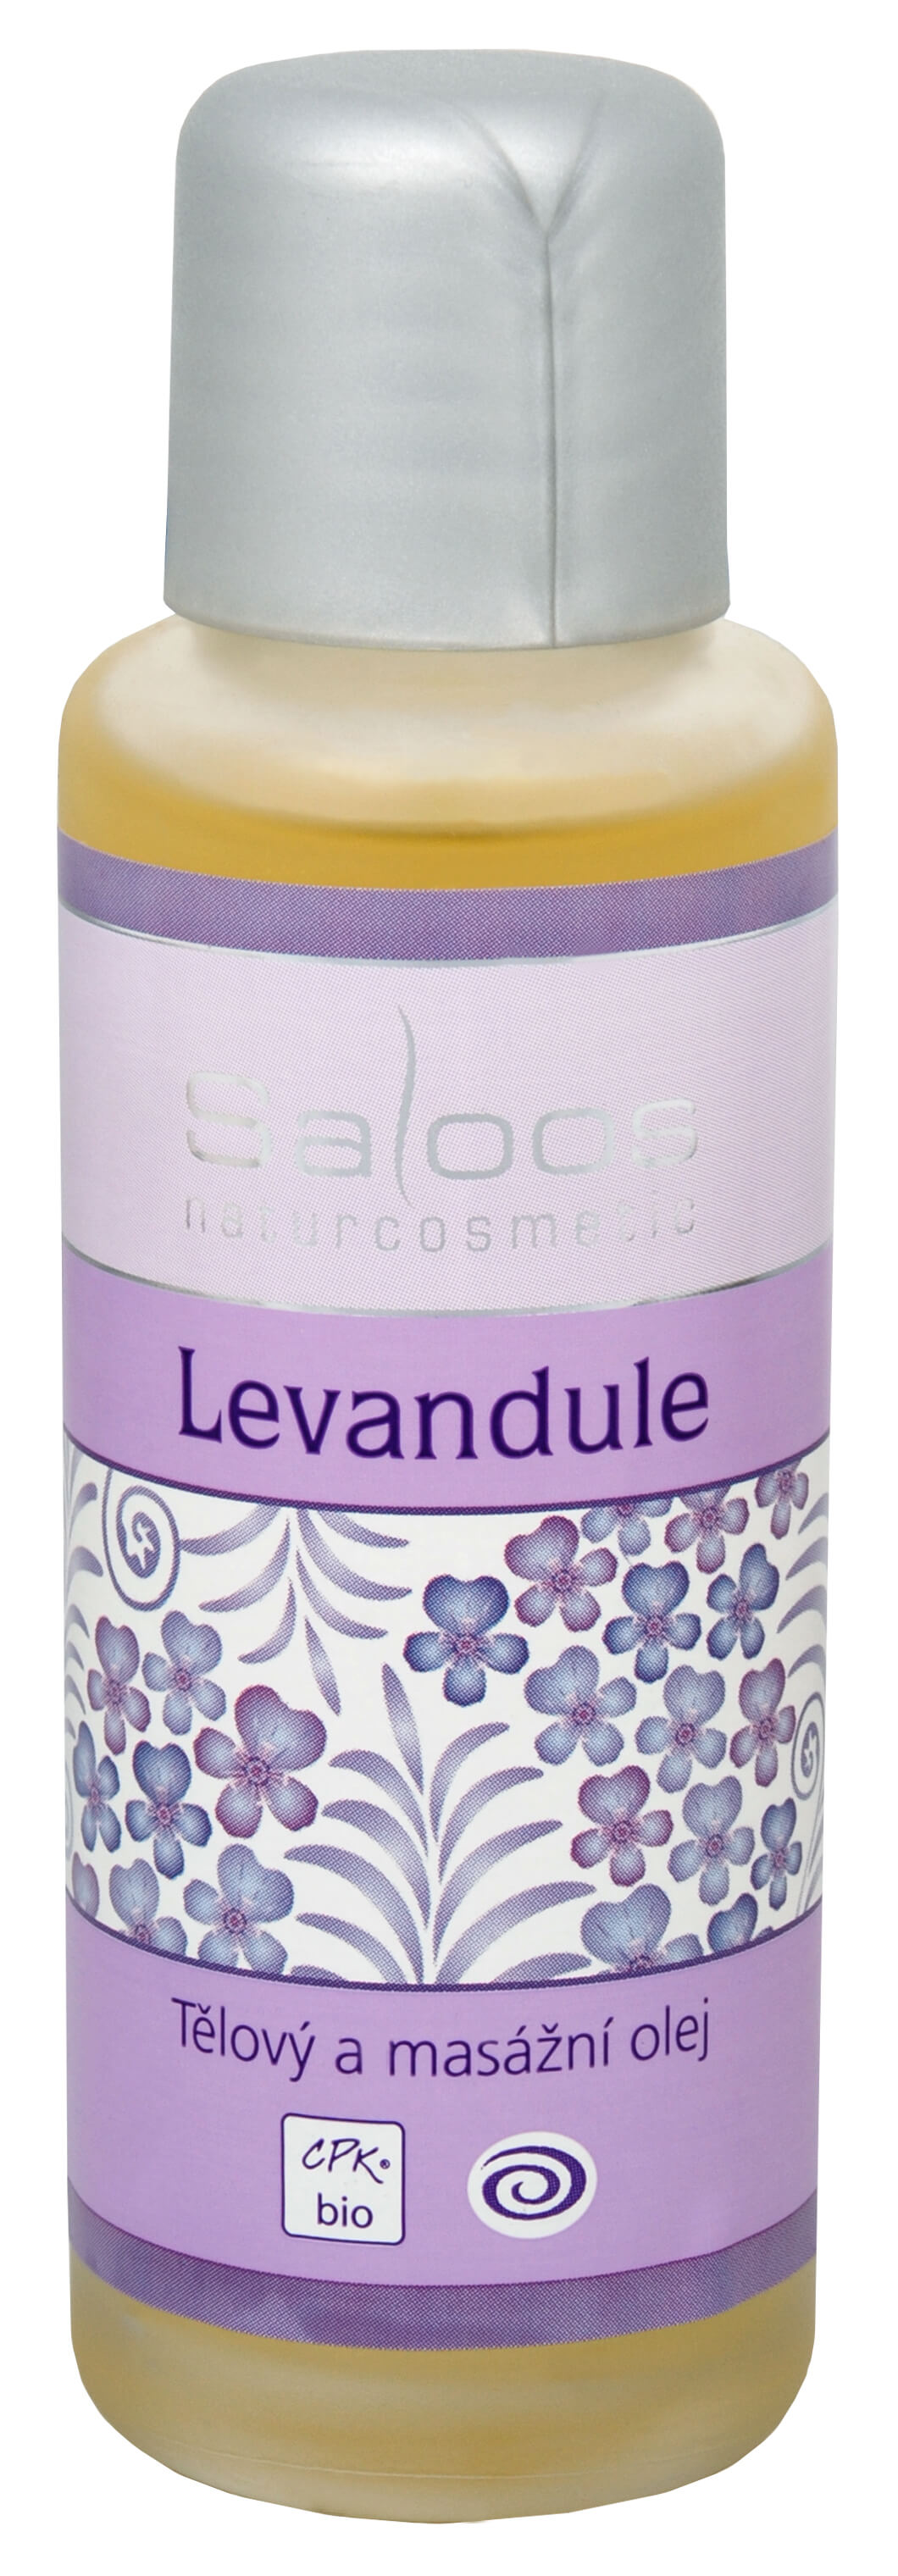 Saloos Bio tělový a masážní olej - Levandule 250 ml